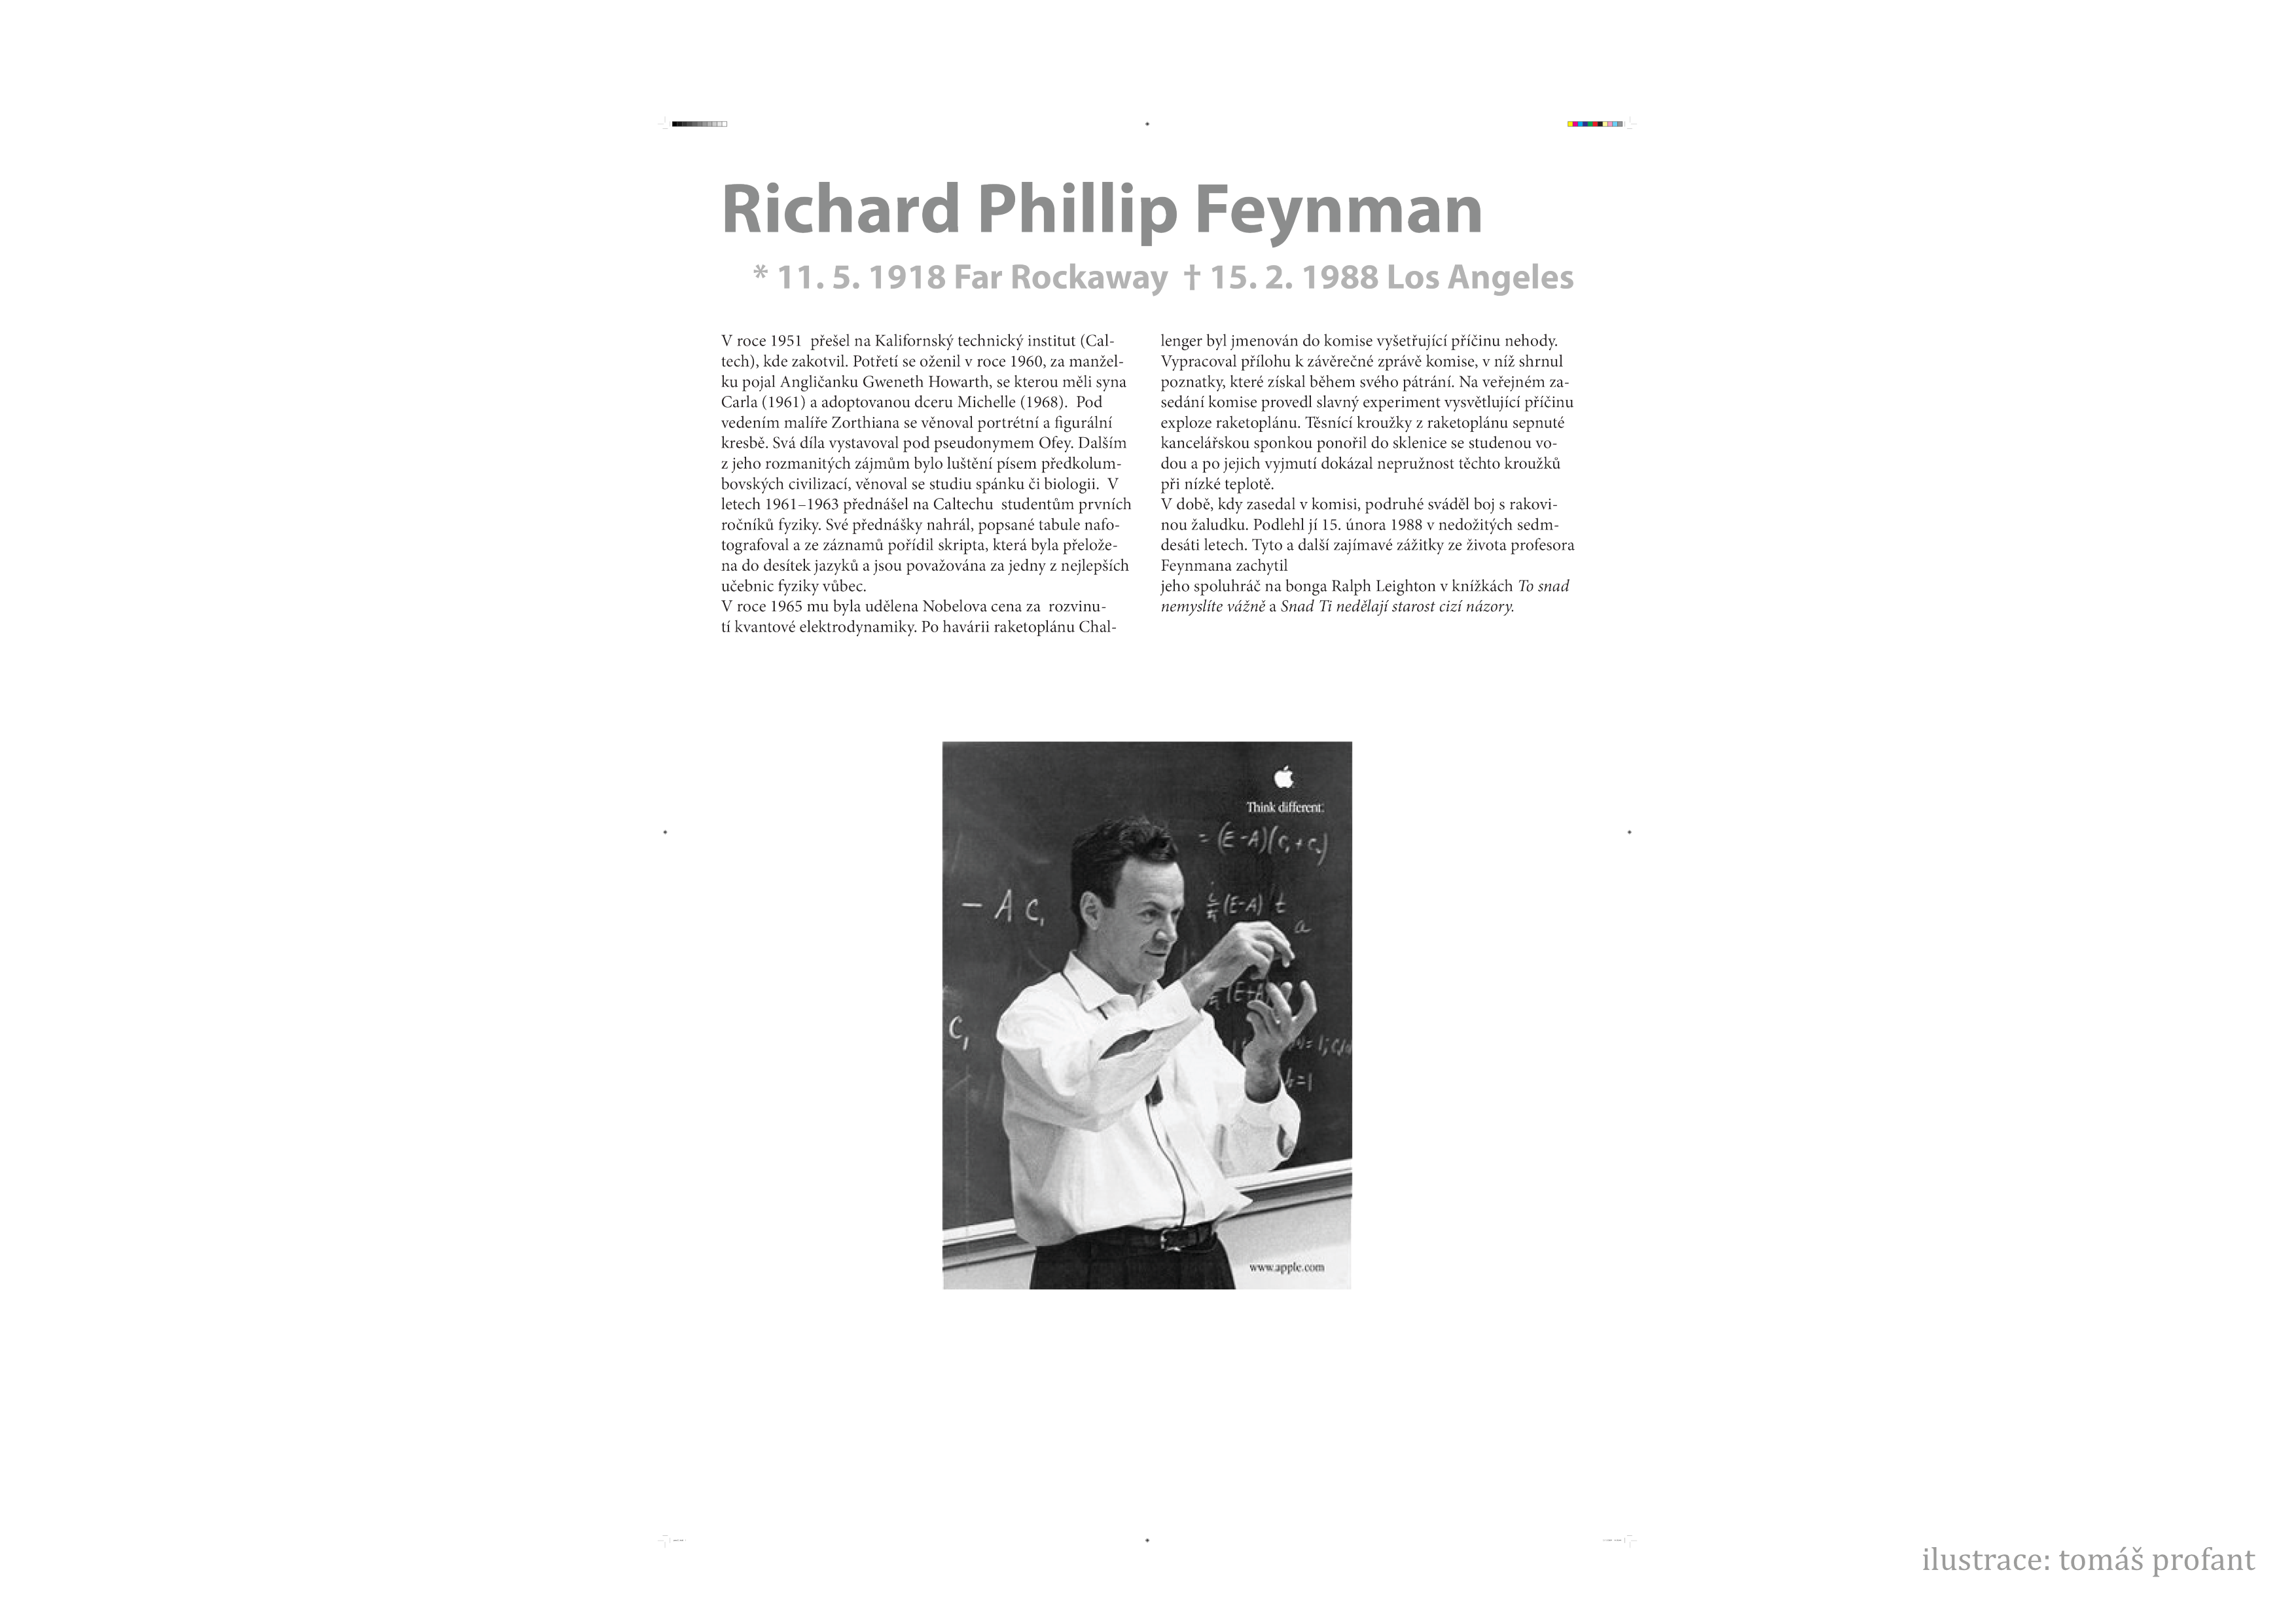 _images/feynman-str%C3%A1nka002.png